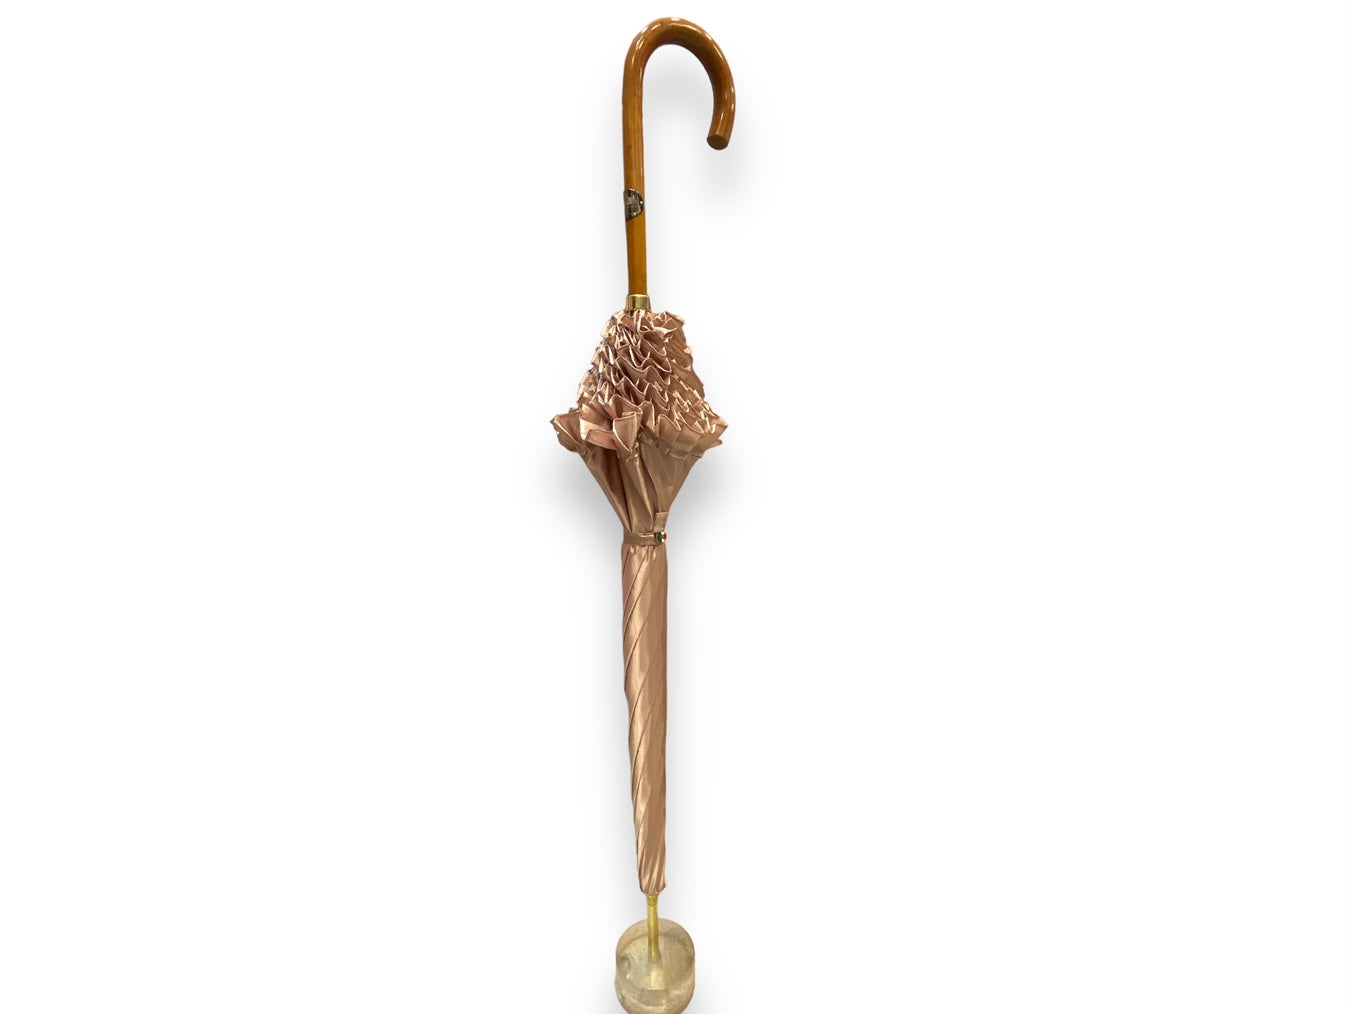 Ombrello Donna "stile 800" Colore Cipria lucido manico in canna di Malacca lavorazione artigianale Ombrelli Domizio dal 1989 Made in Italy